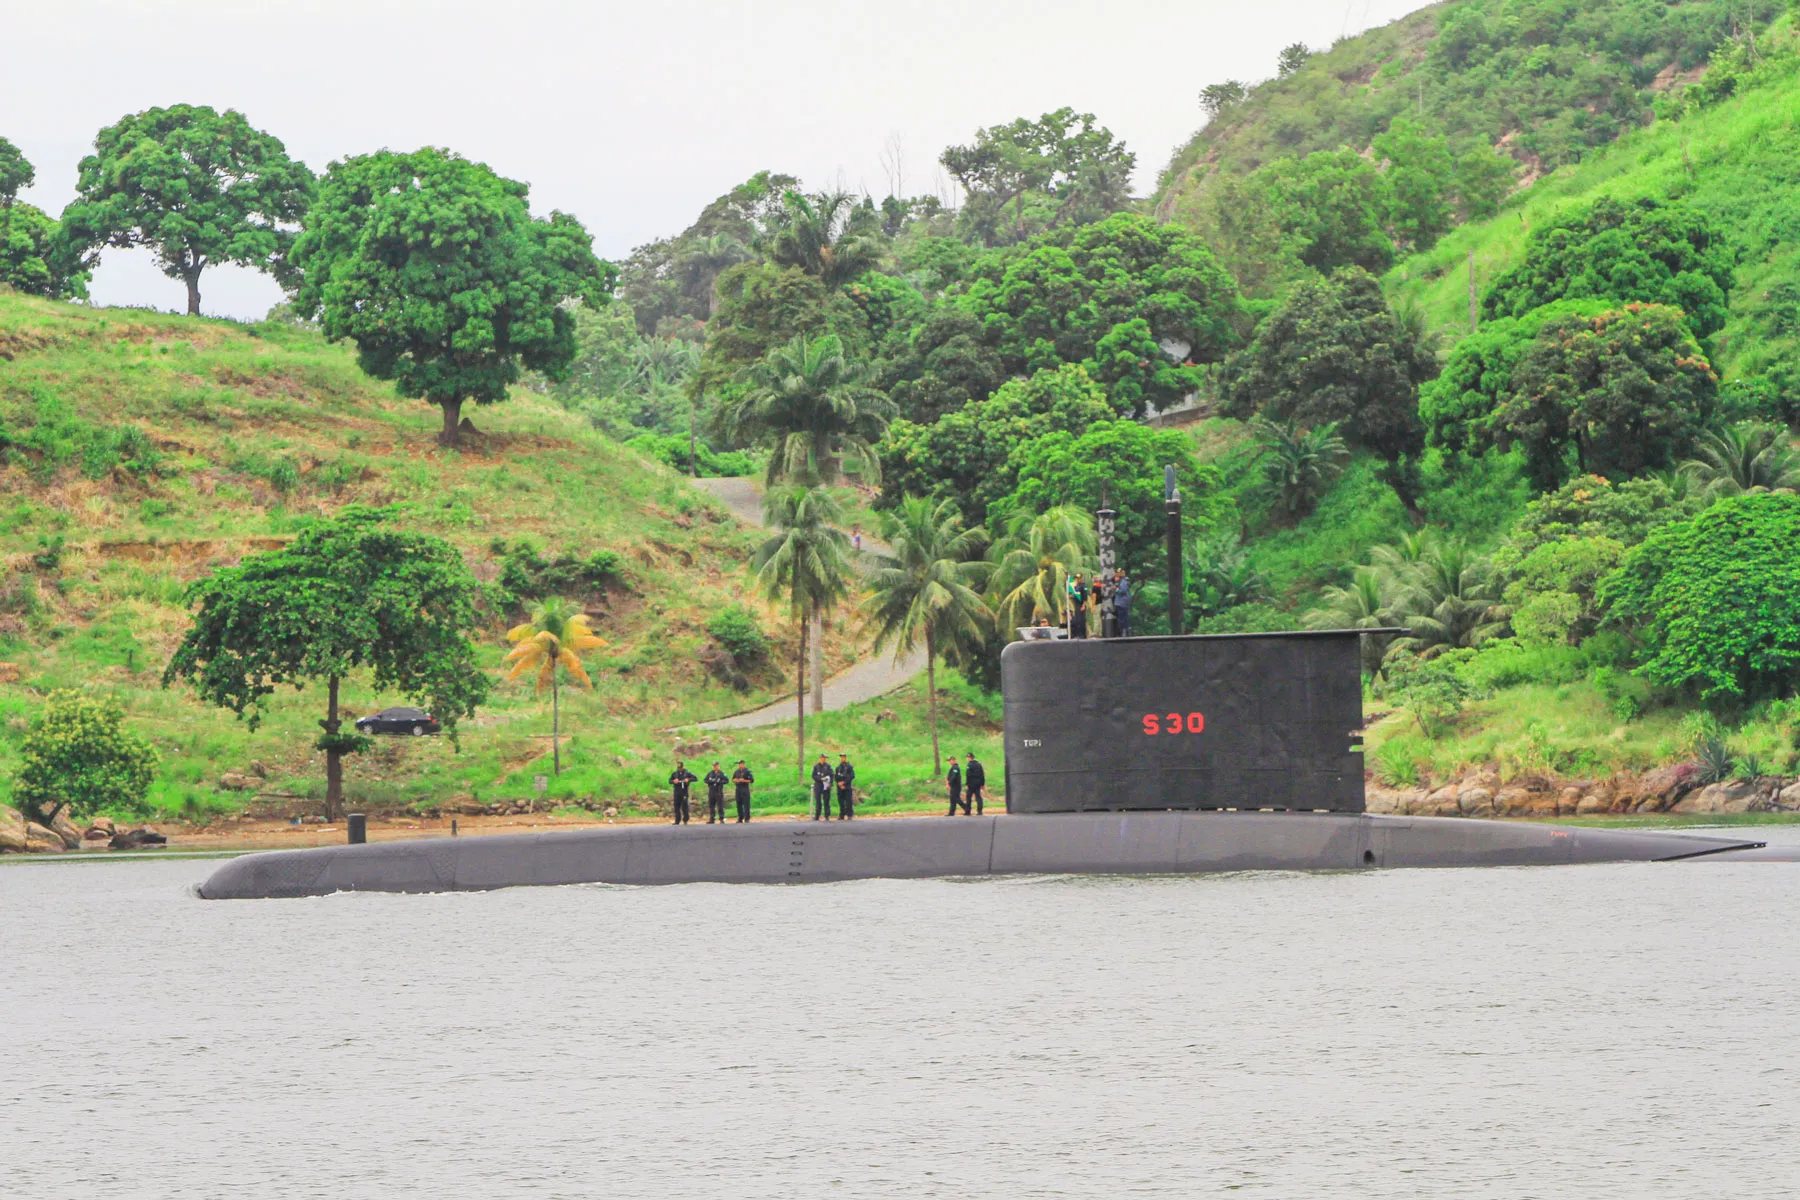 Flagra de submarino passando na baía de Vitória